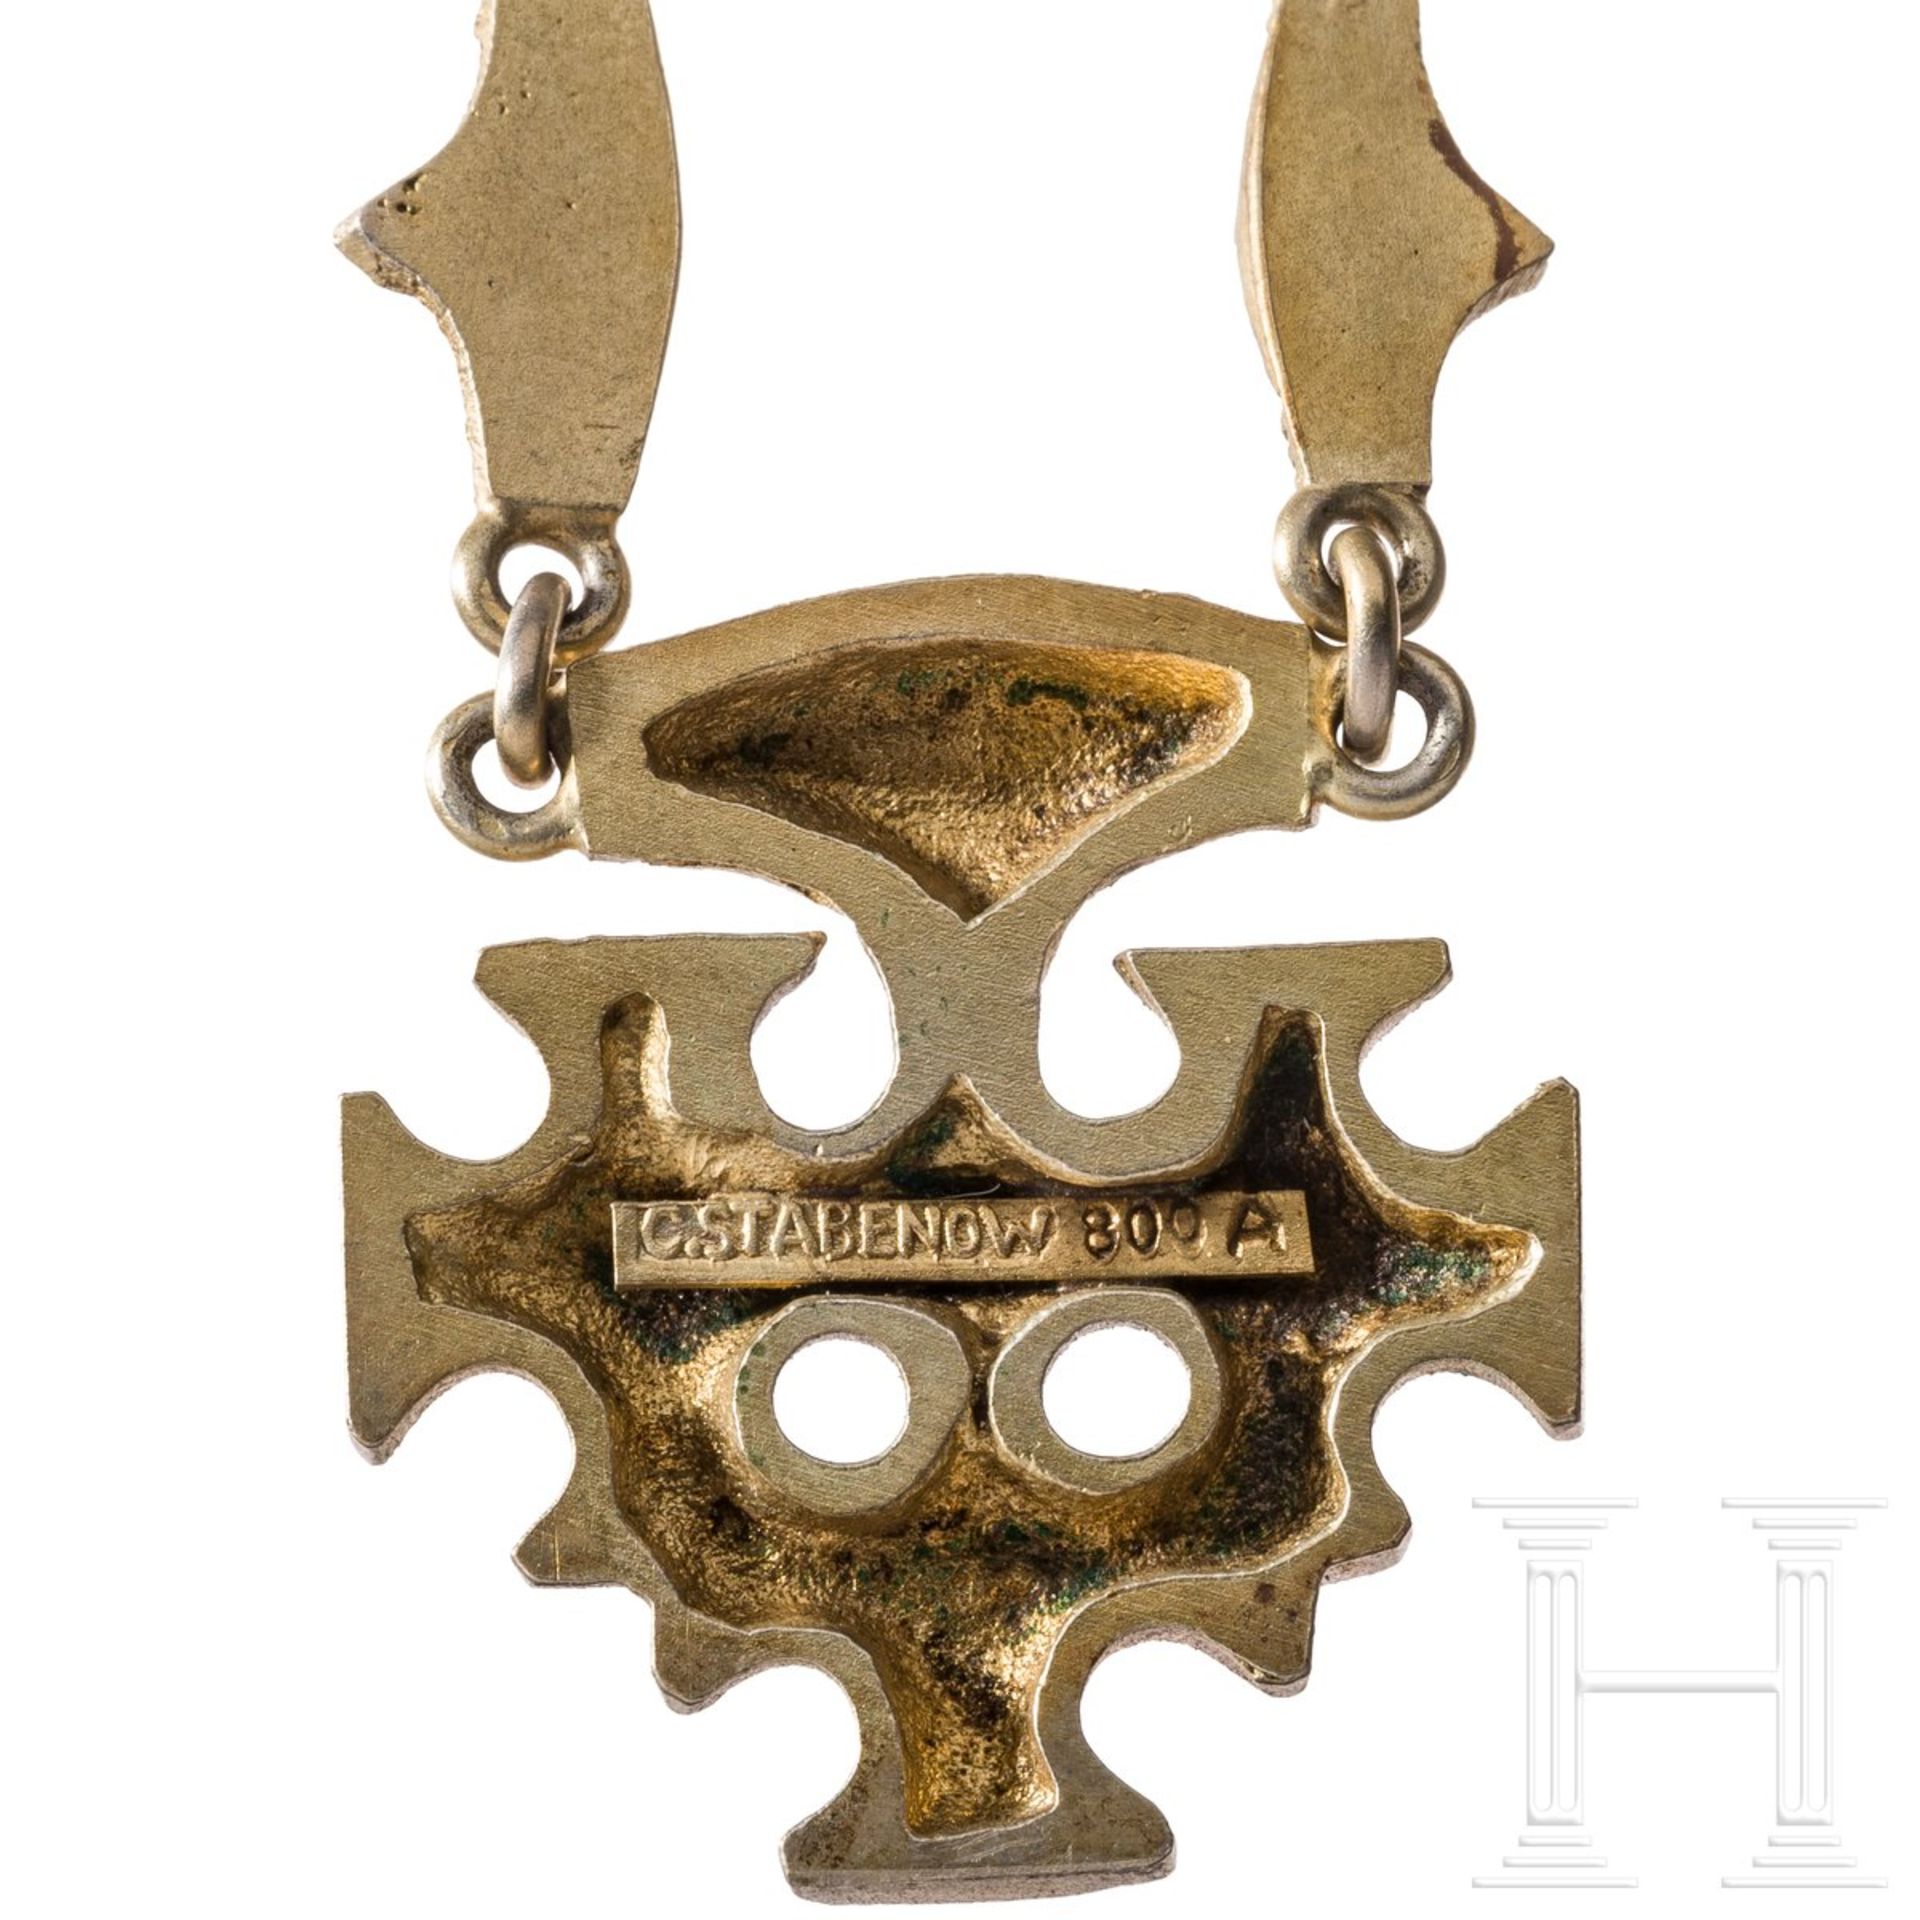 Halskette und Brosche nach dem Hiddenseer Goldschmuck, C. Stabenow, Stralsund - Bild 2 aus 2